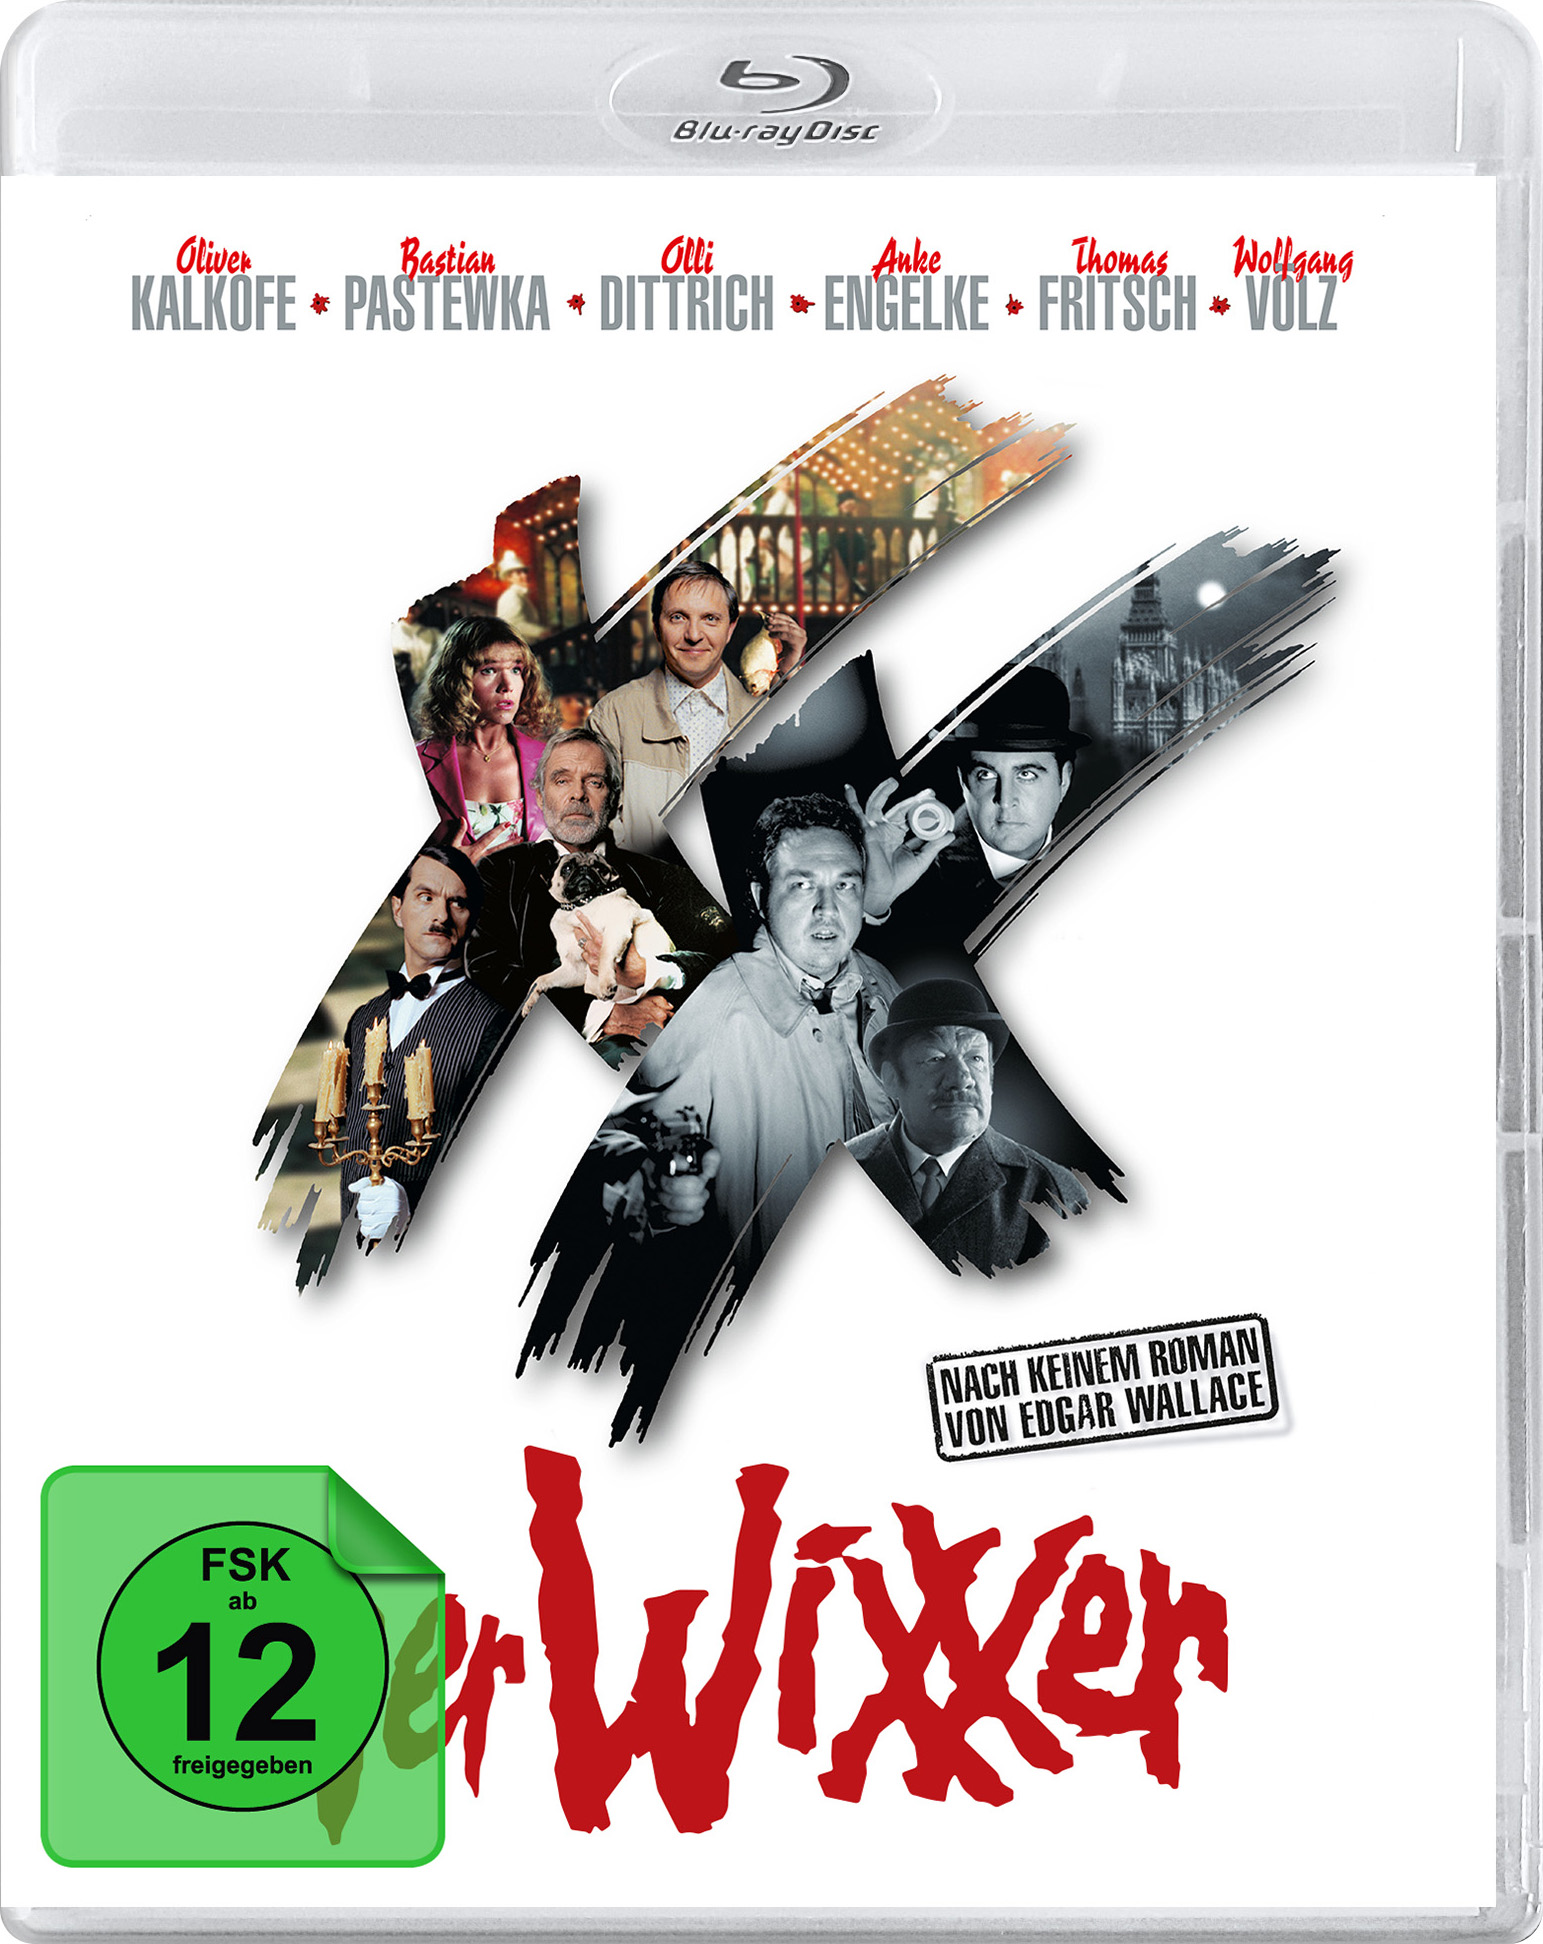 Der WiXXer